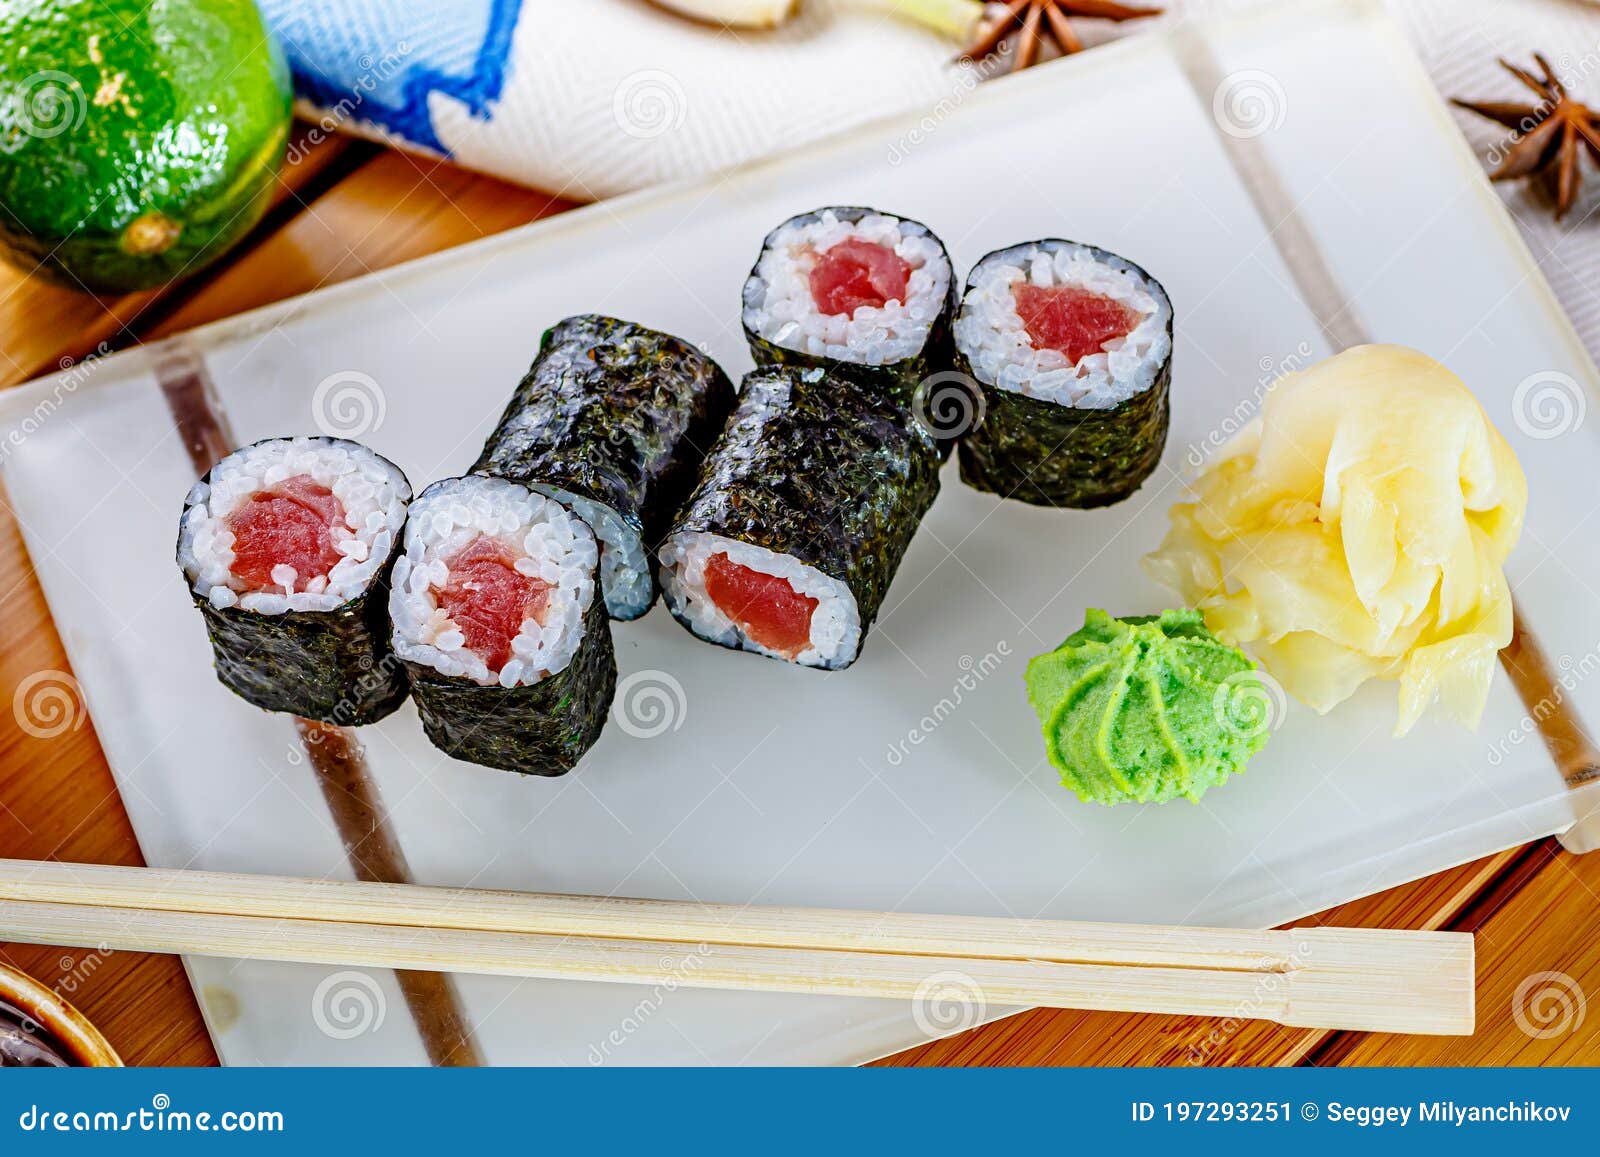 sushi rolls hosomaki with tuna